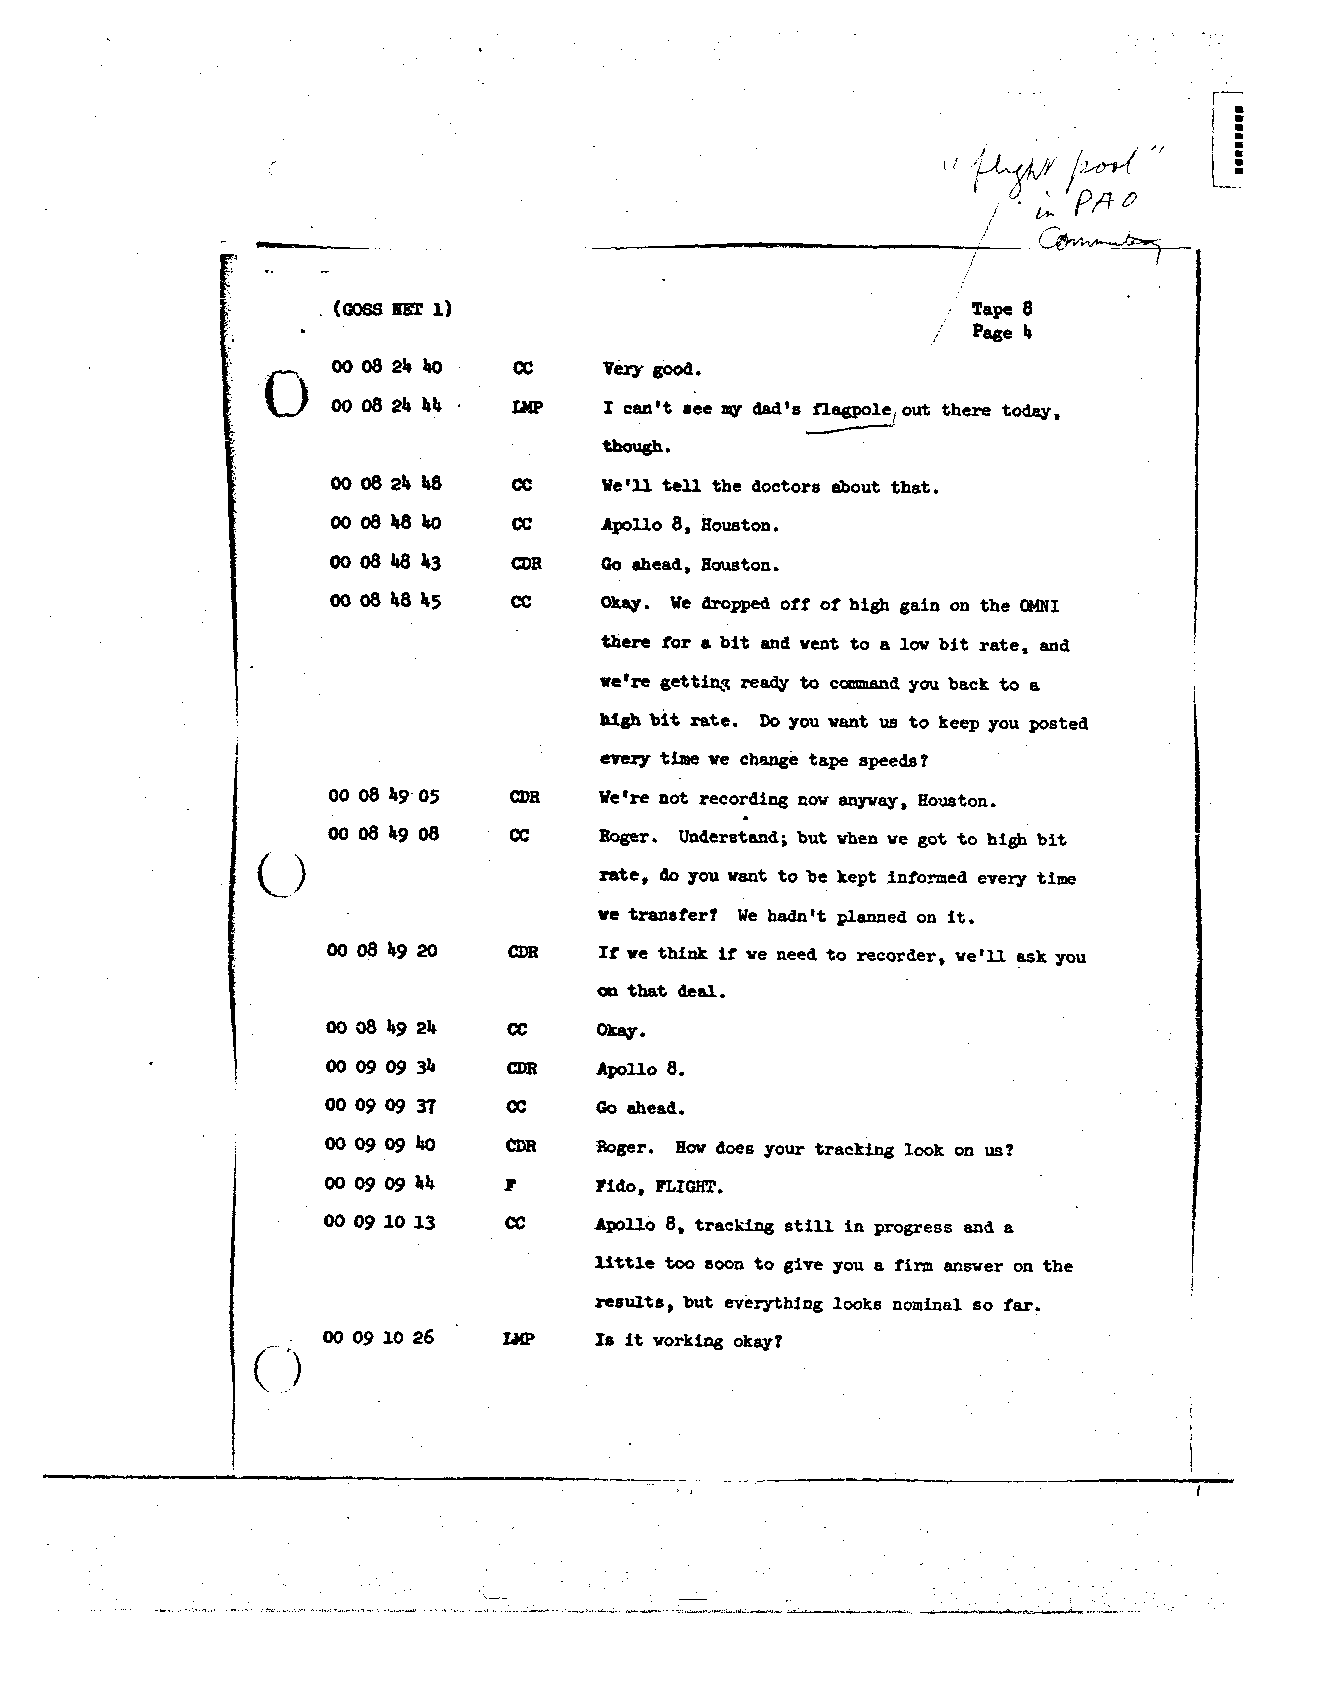 Page 76 of Apollo 8’s original transcript